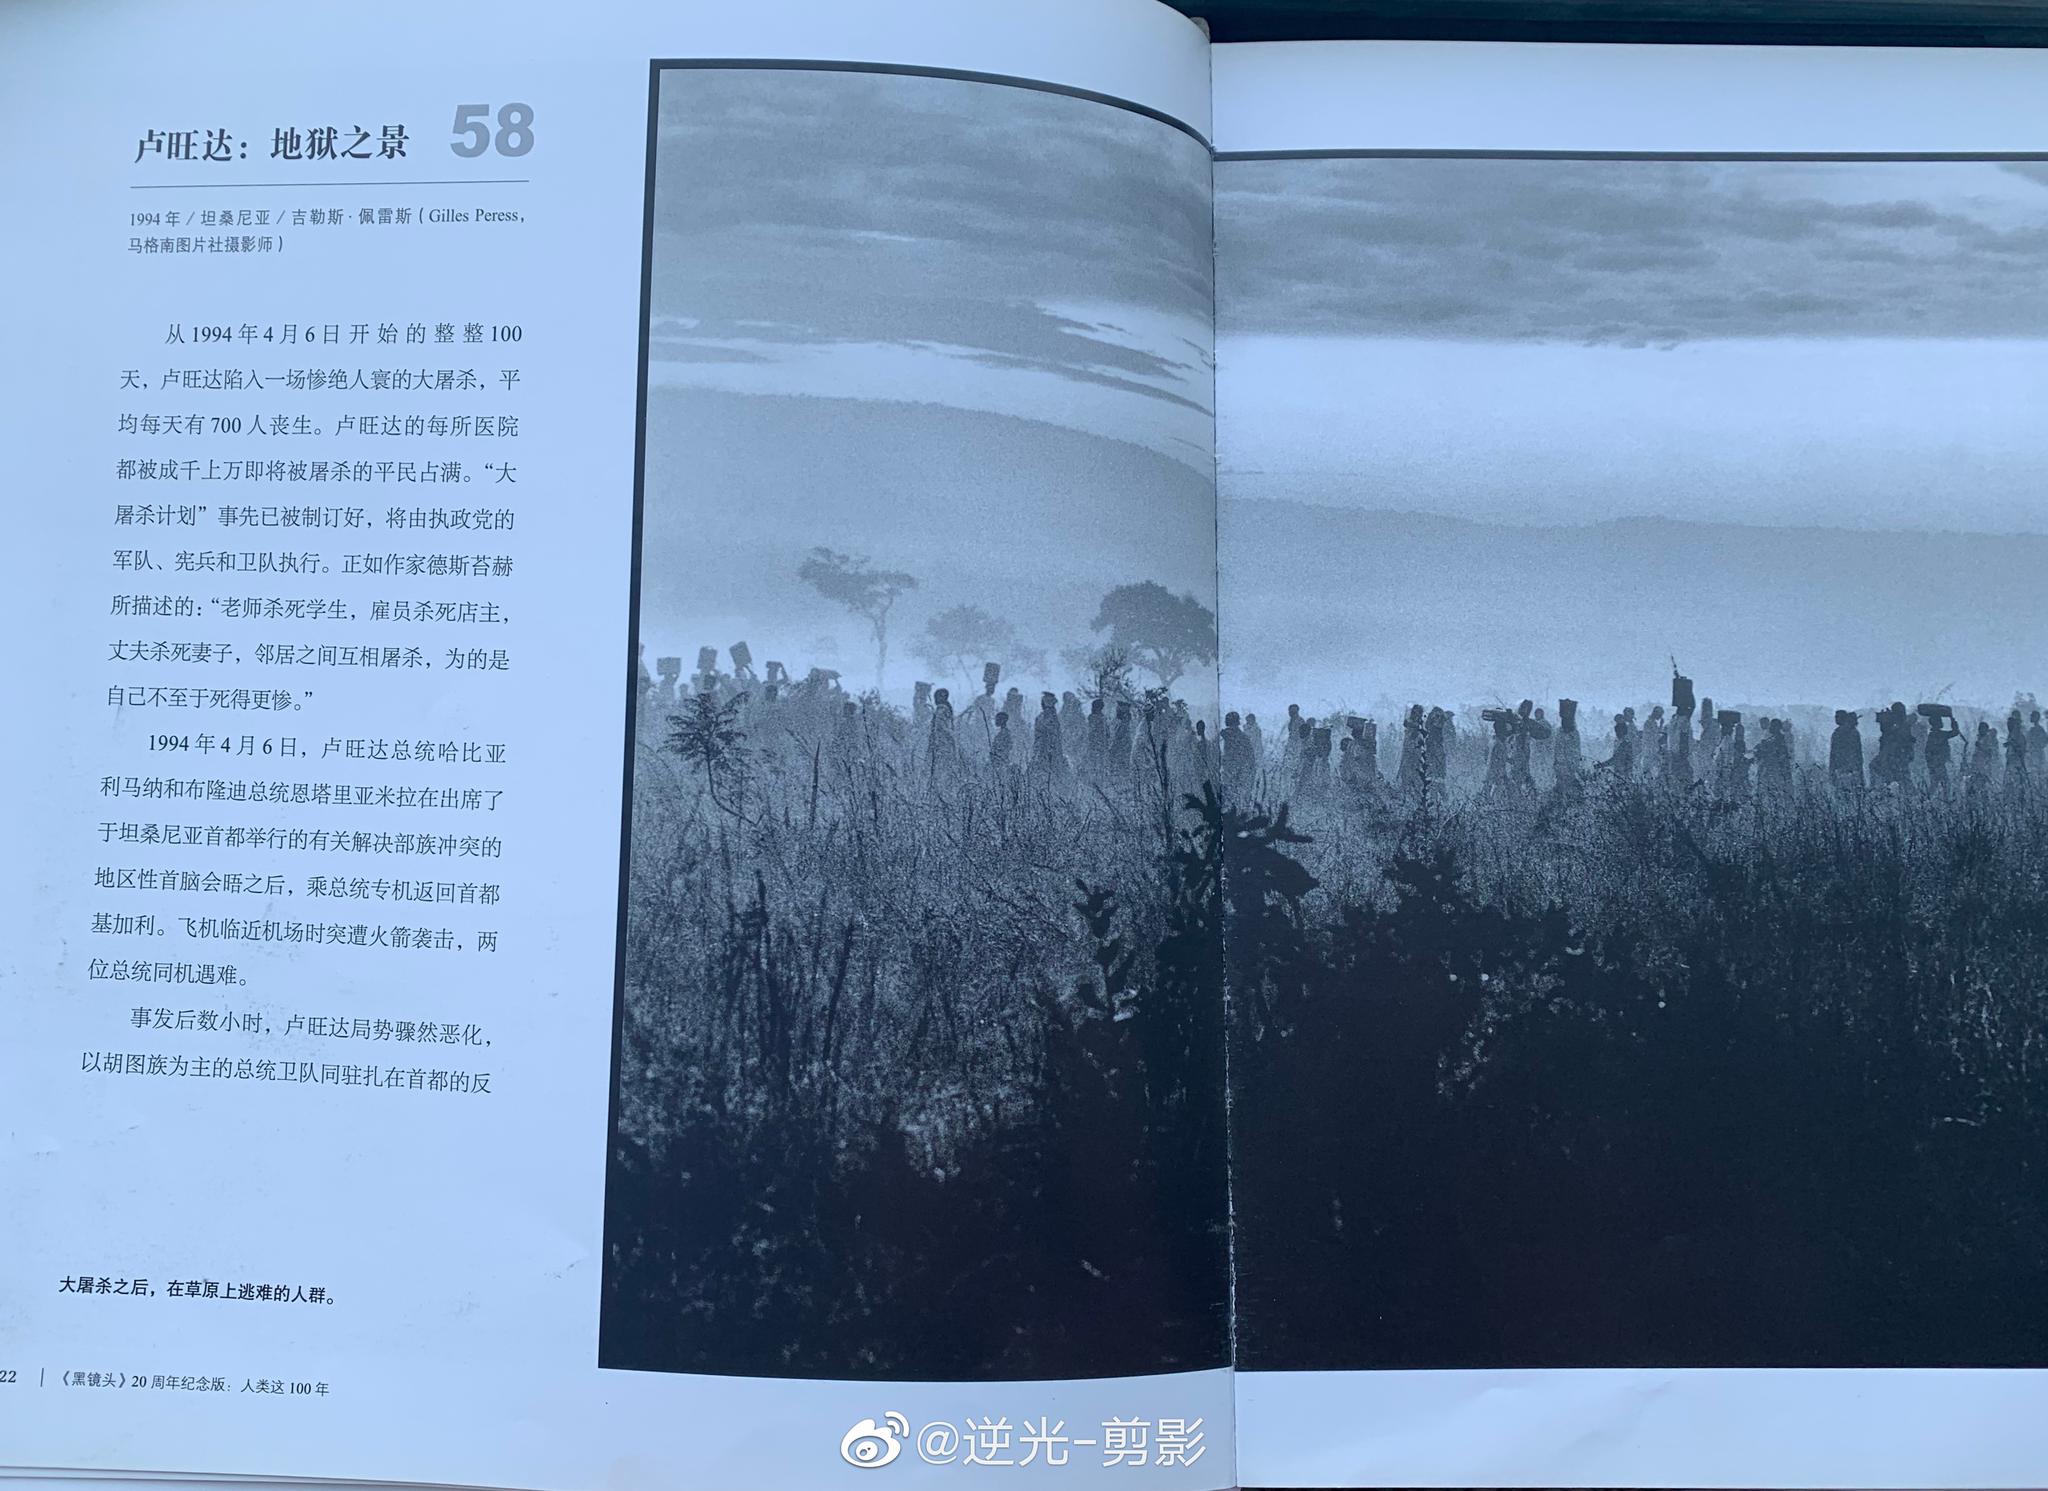 图片素材 : 黑与白, 轮, 黑色, 单色摄影, 单镜头反光相机 4000x3000 - - 176173 - 素材中国, 高清壁纸 - PxHere摄影图库